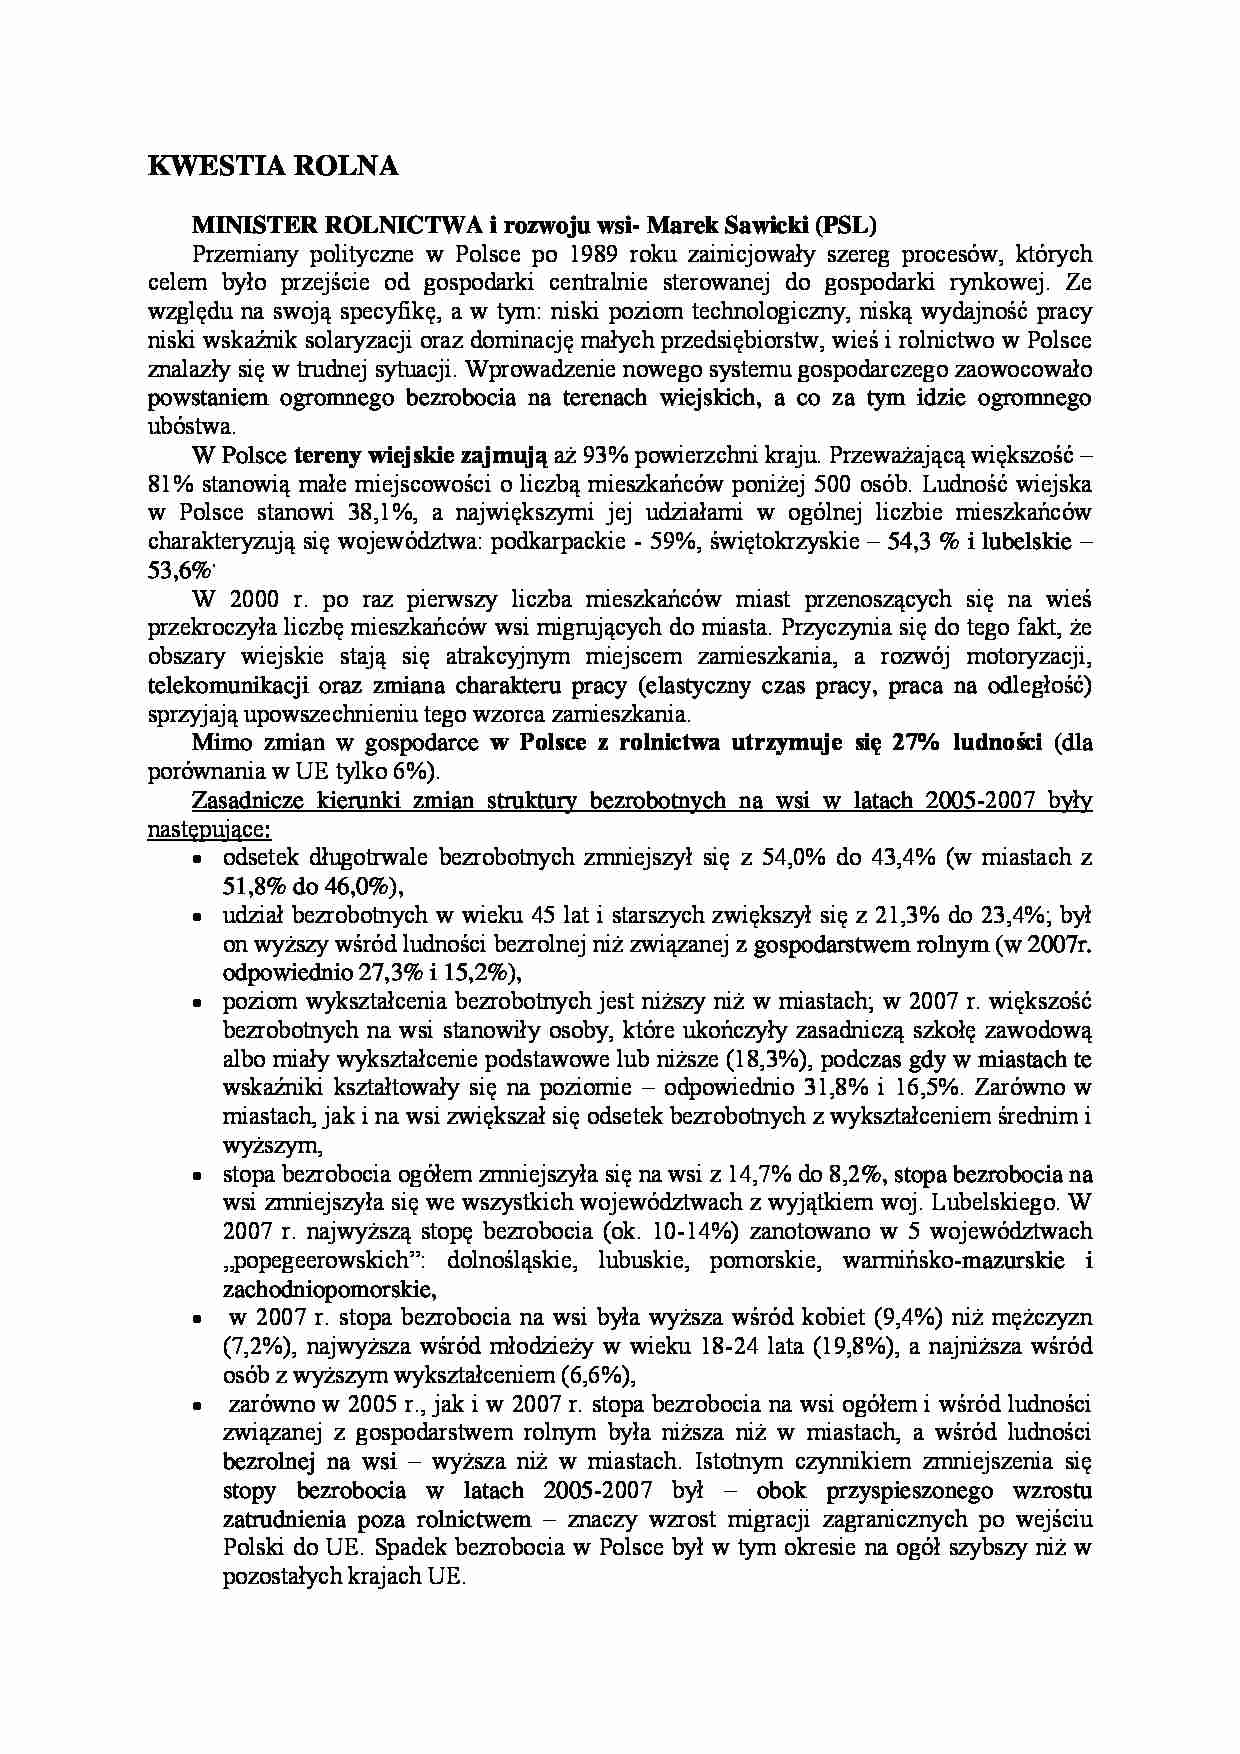 Kwestia rolna-minister rolnictwa i rozwoju wsi Marek Sawicki - strona 1